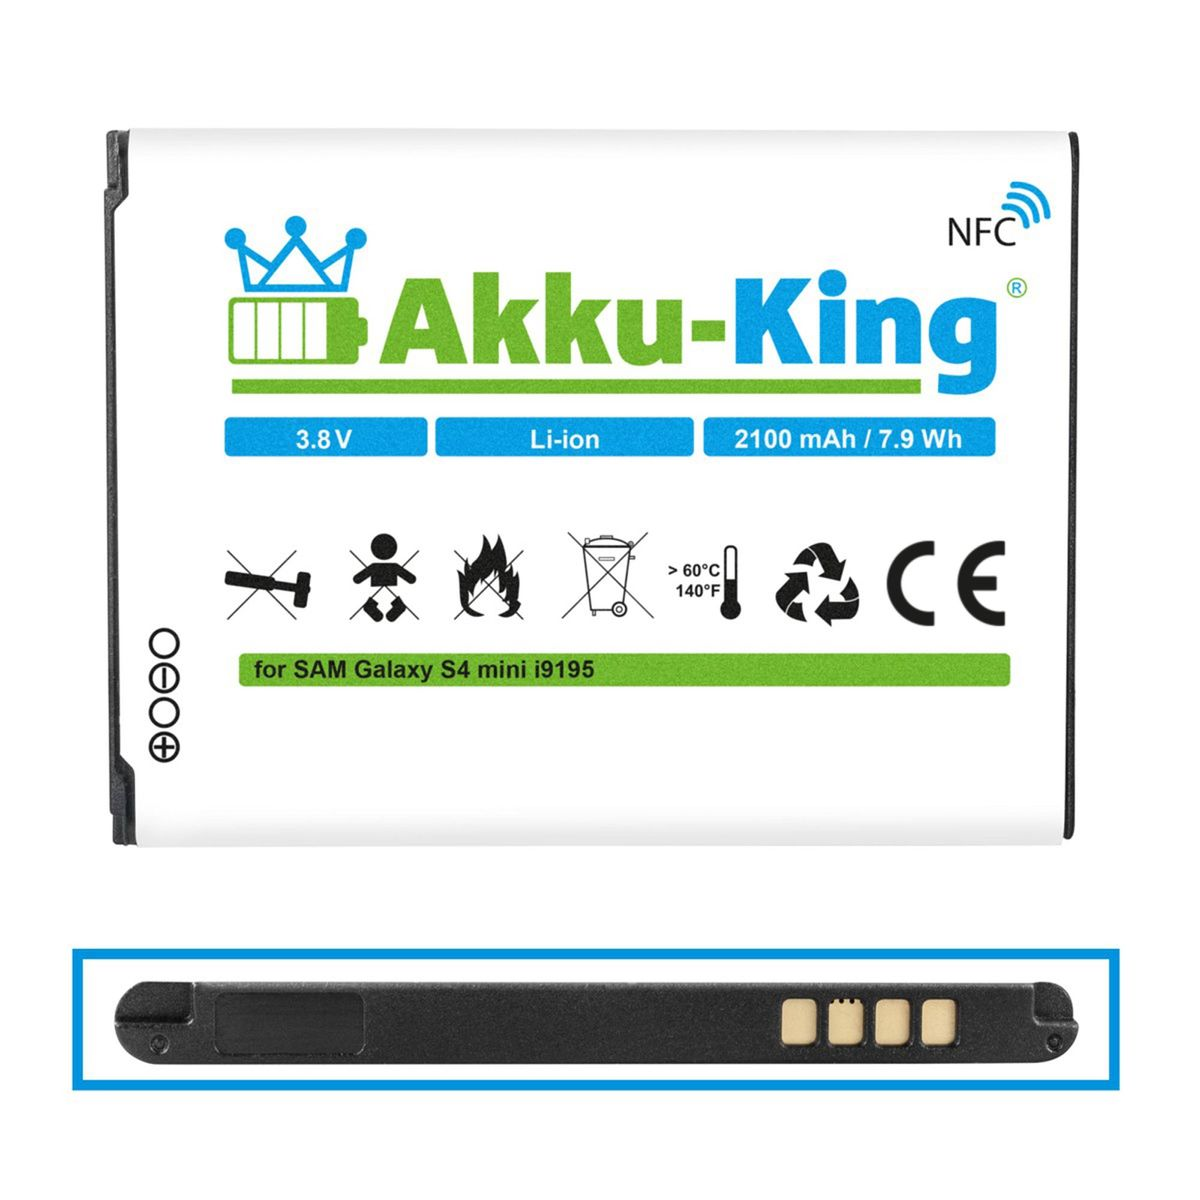 Samsung mit Volt, NFC kompatibel Akku Handy-Akku, Li-Ion EB-B500BE AKKU-KING 3.8 2100mAh